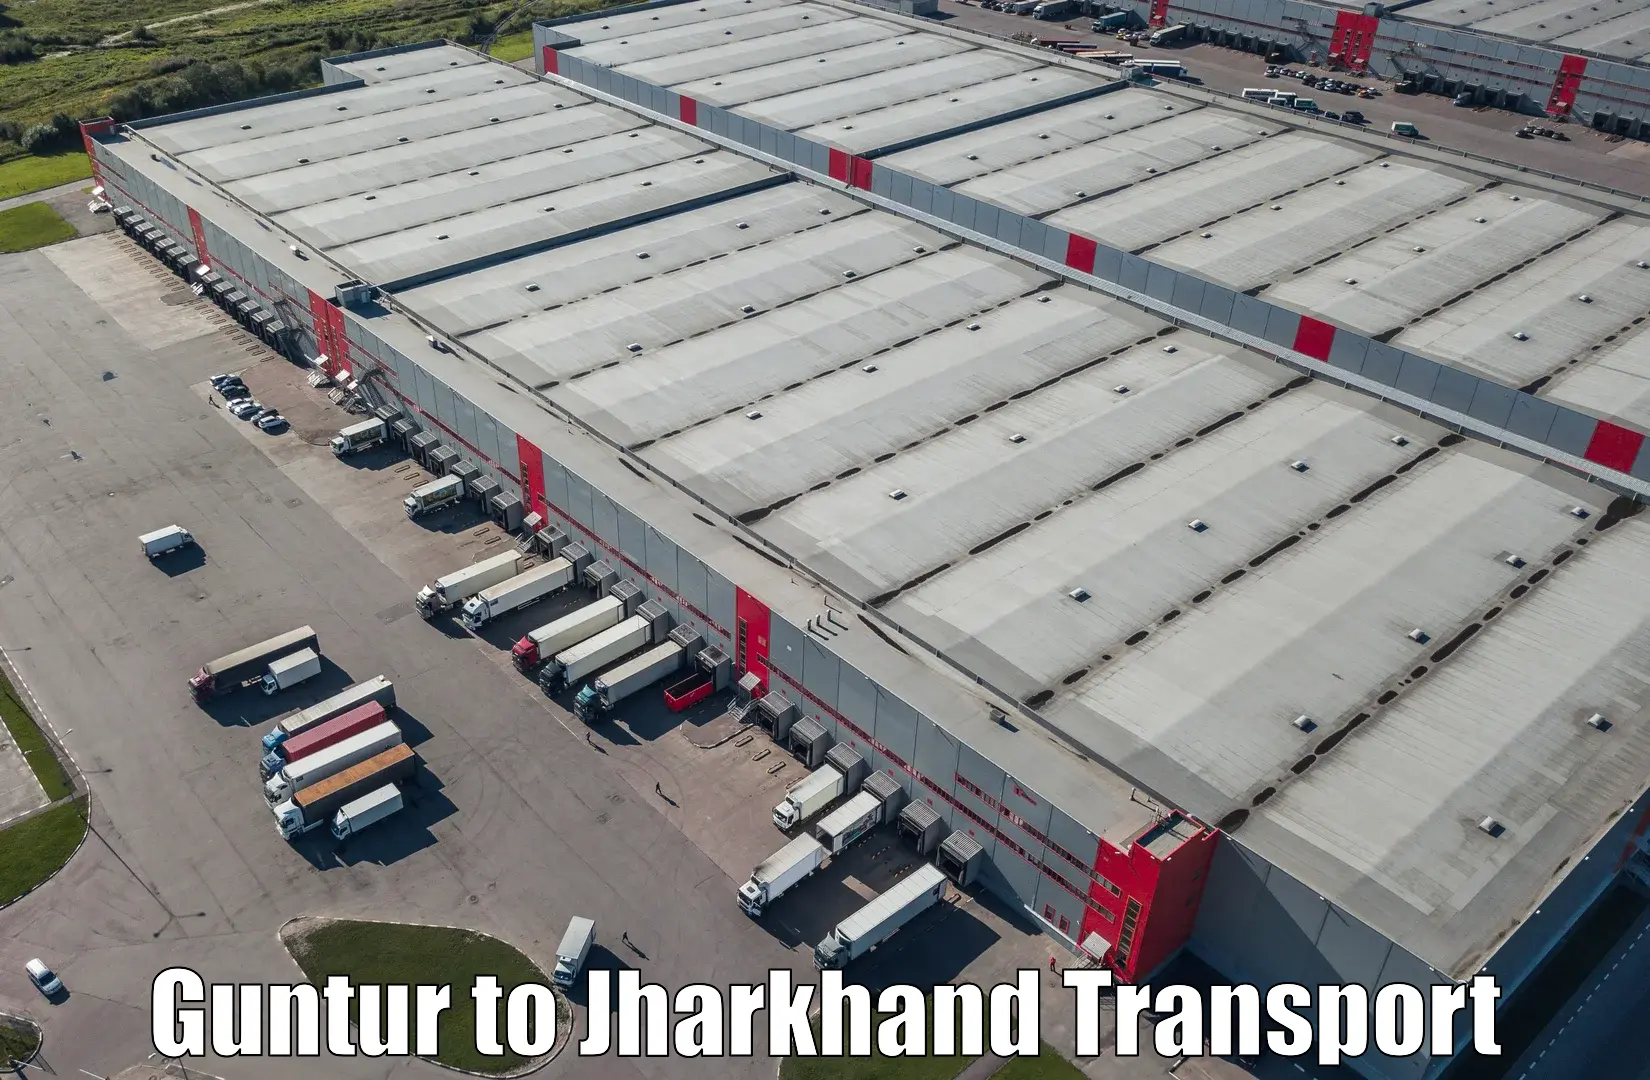 Cargo train transport services Guntur to Chandwa